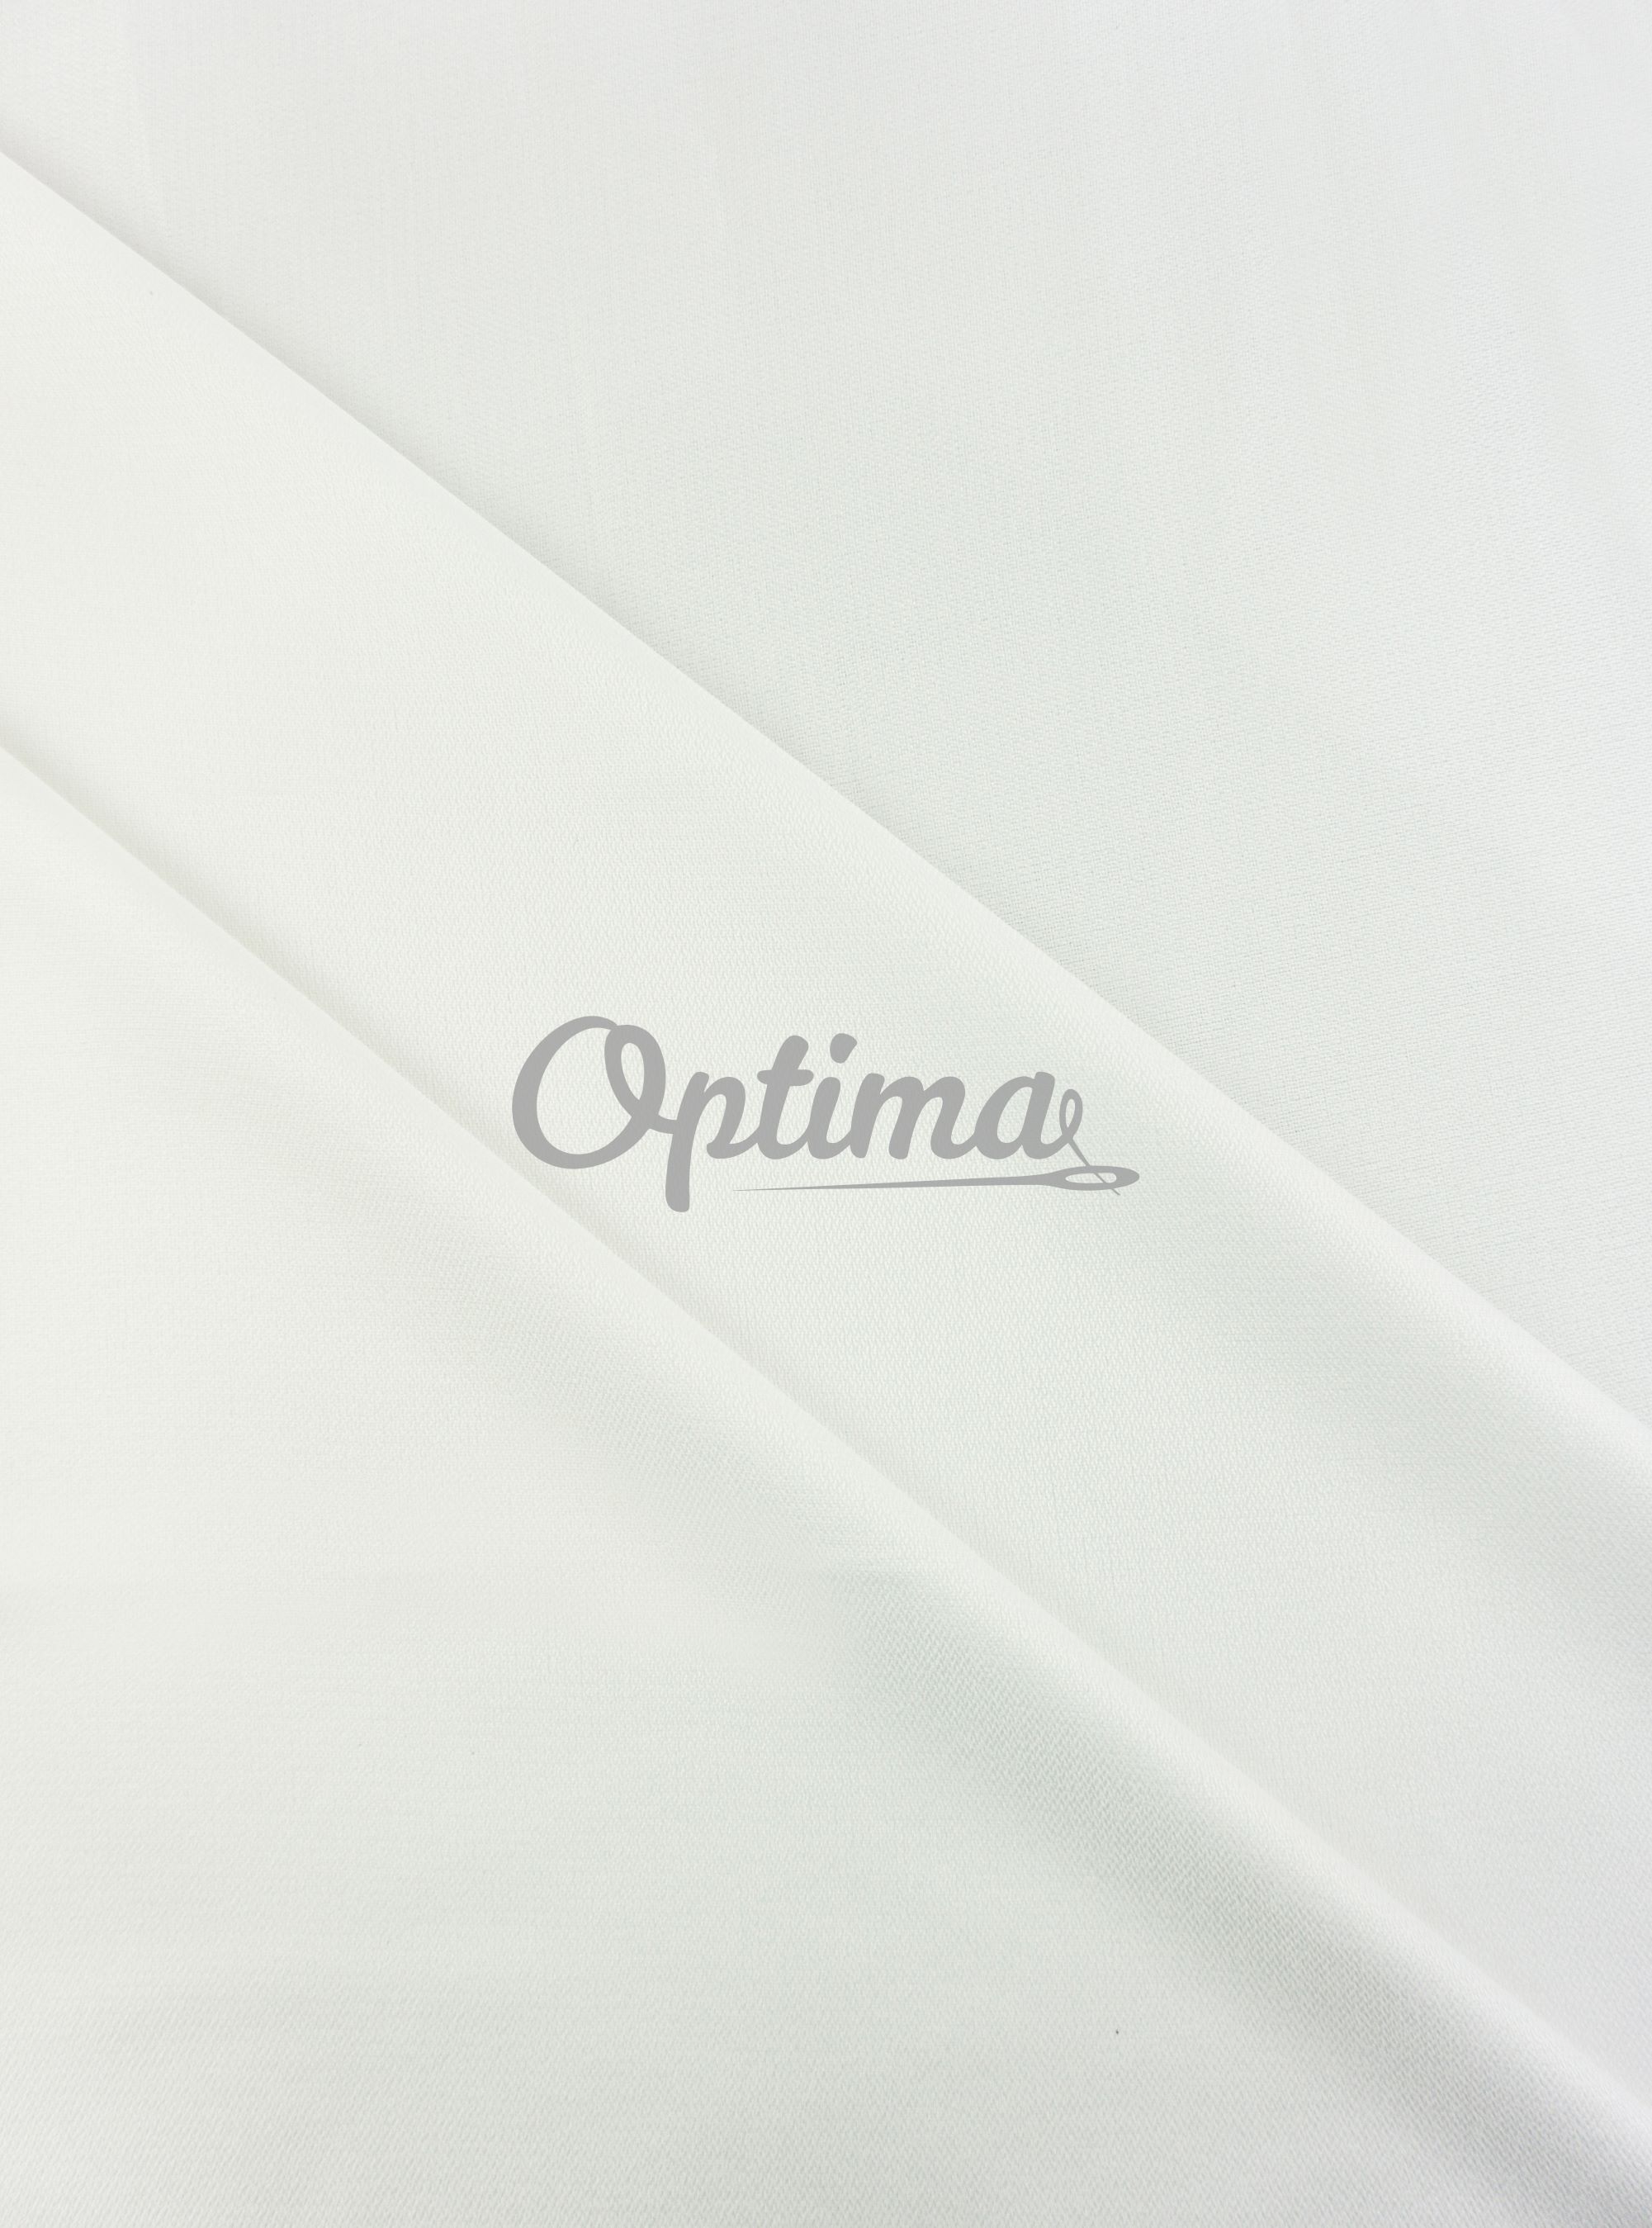 Дублерин пальтово-костюмный биэластичный R75 вес 72 гр./м. ширина 150 см. (рулон 100м.)  белый  